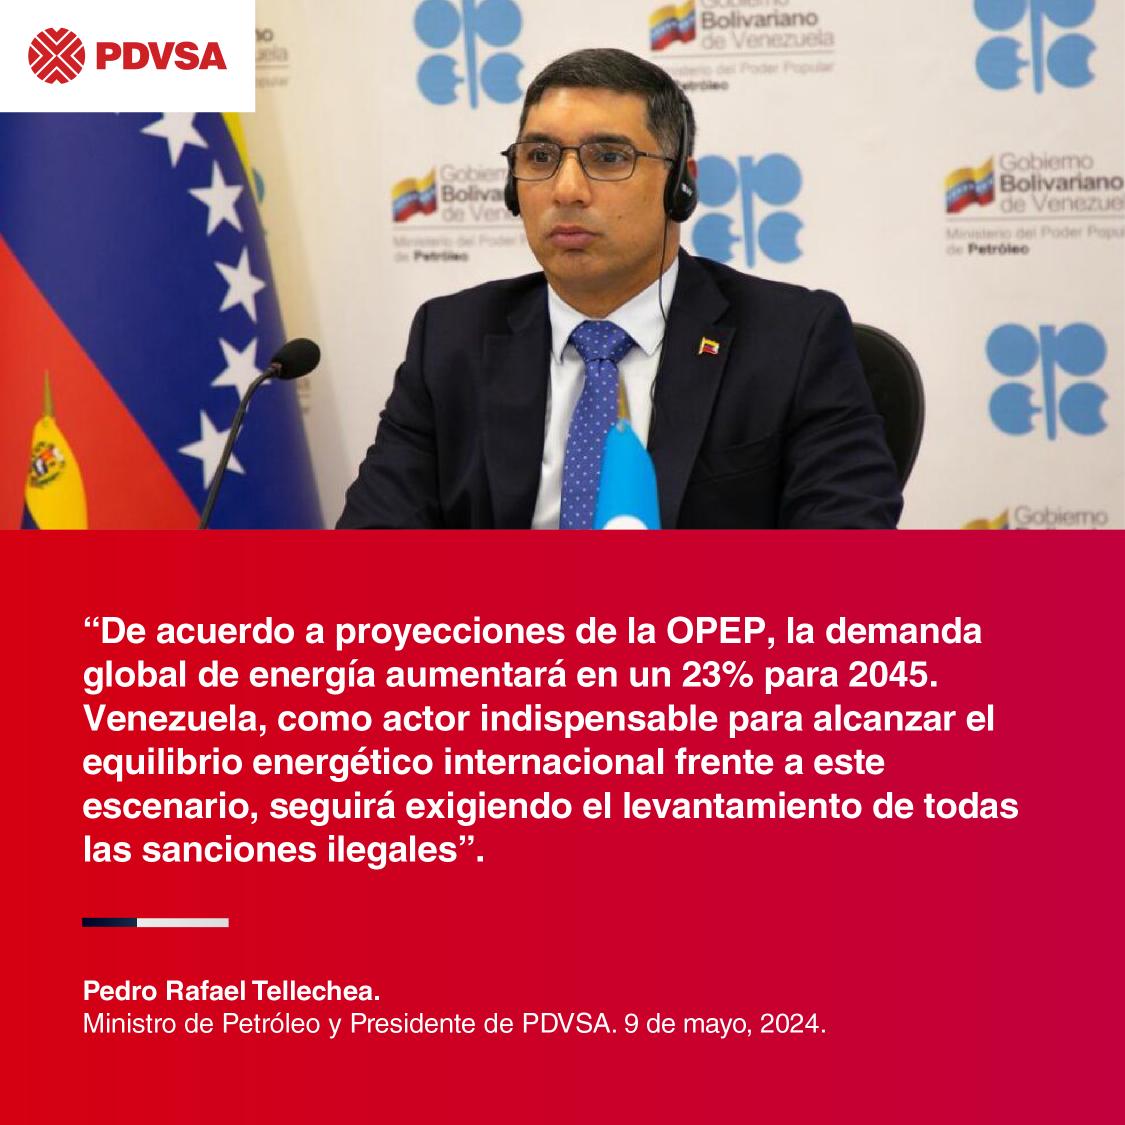 Nuestro país tiene el potencial para desempeñar un papel aún más importante en la seguridad energética global. Con sus vastas reservas de petróleo y su fuerza laboral calificada, Venezuela refuerza su posición para estabilizar el mercado energético mundial.